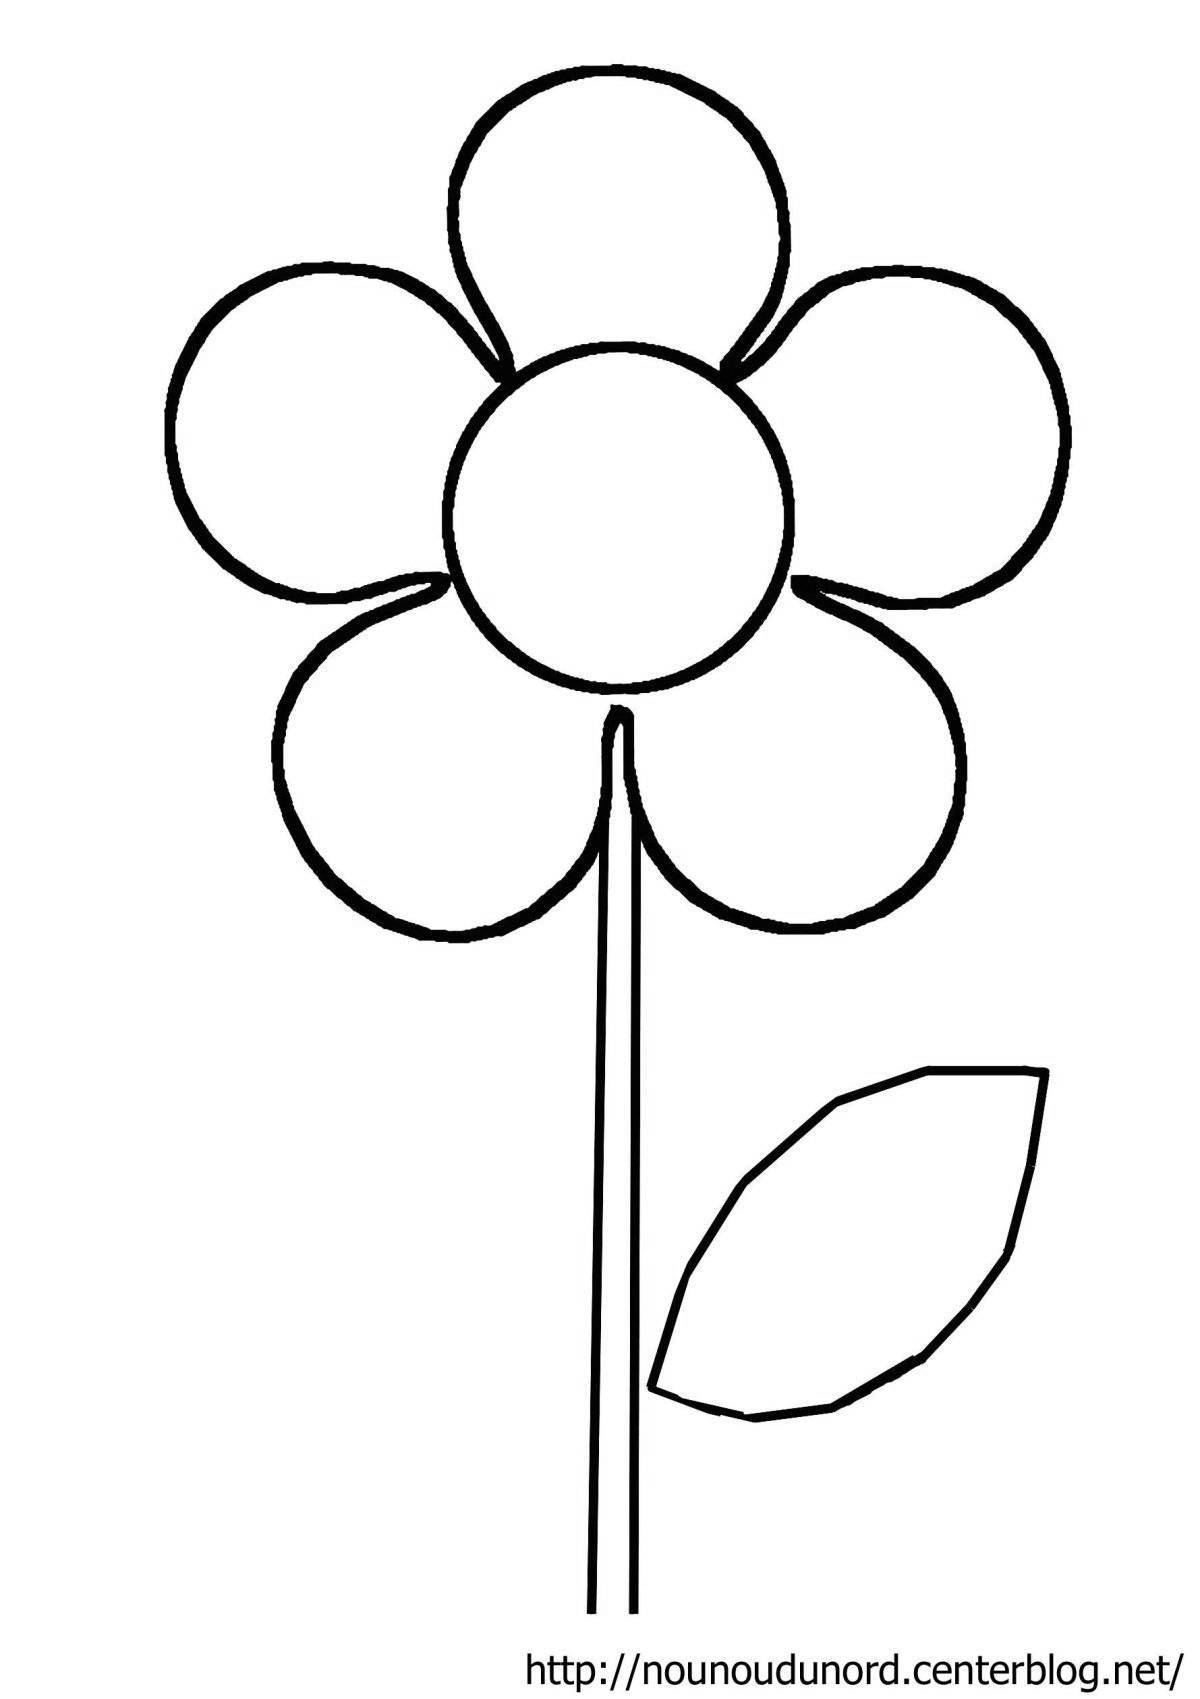 Ослепительная раскраска цветок семицветик для детей 3-4 лет